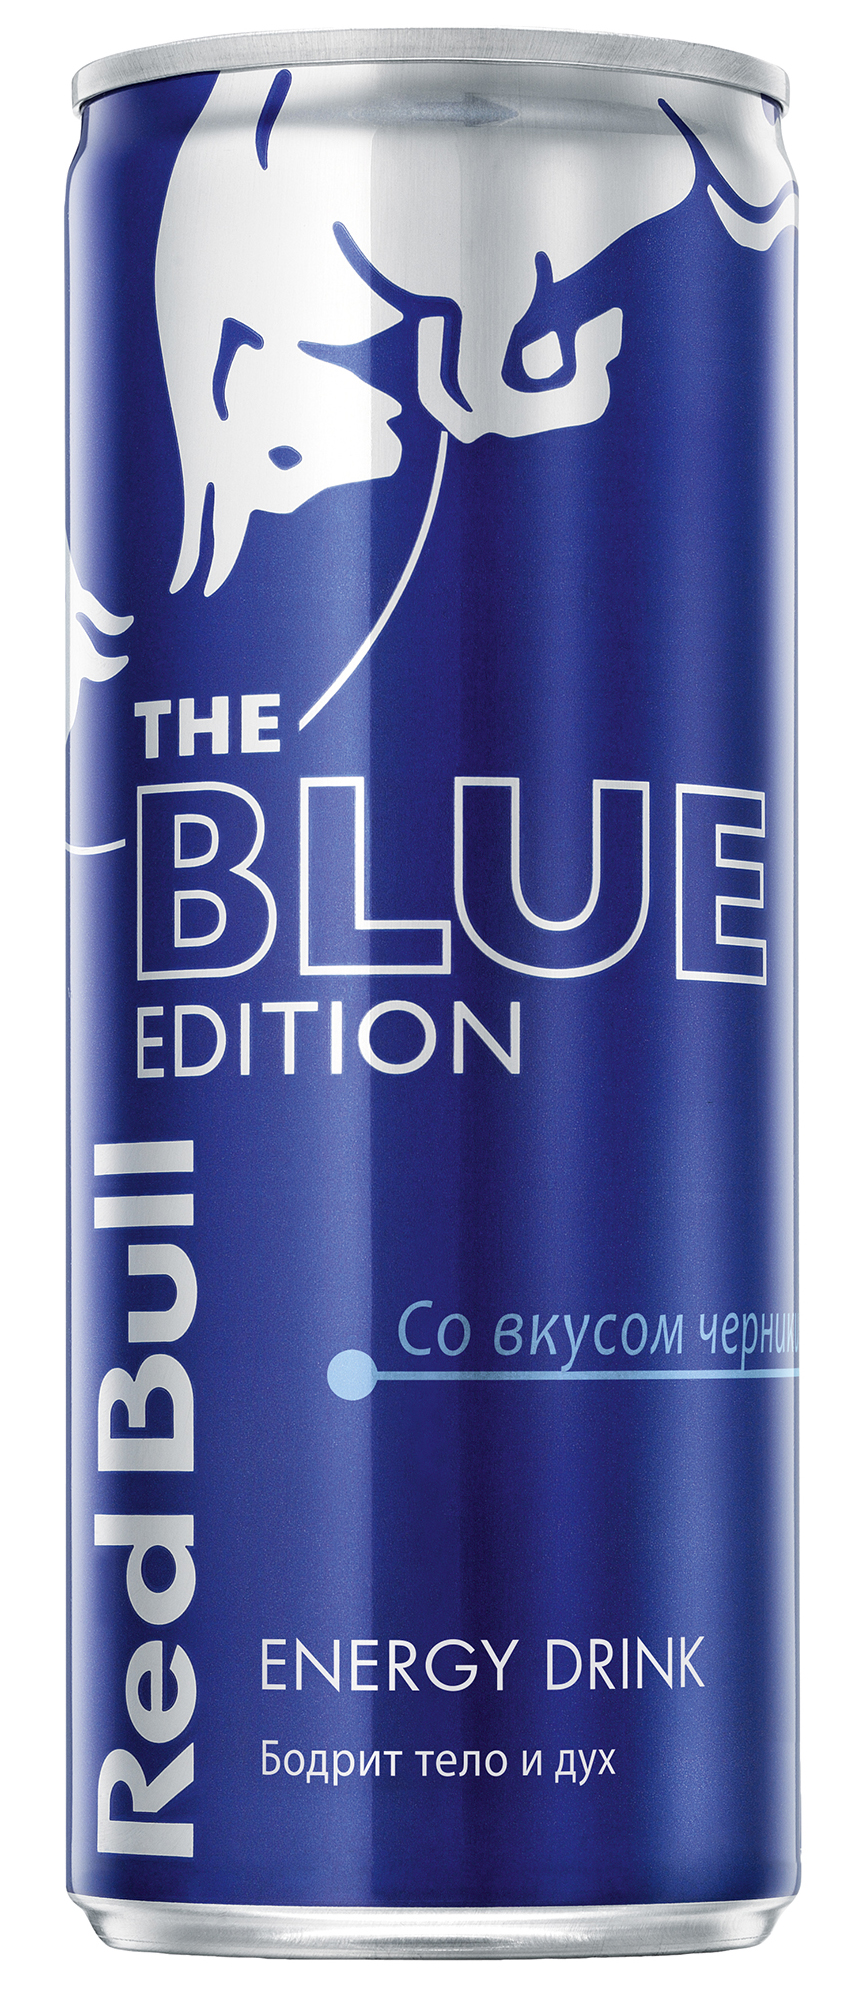 Напиток энергетический Red Bull. The Blue Edition (вкус черники) (250 мл.)